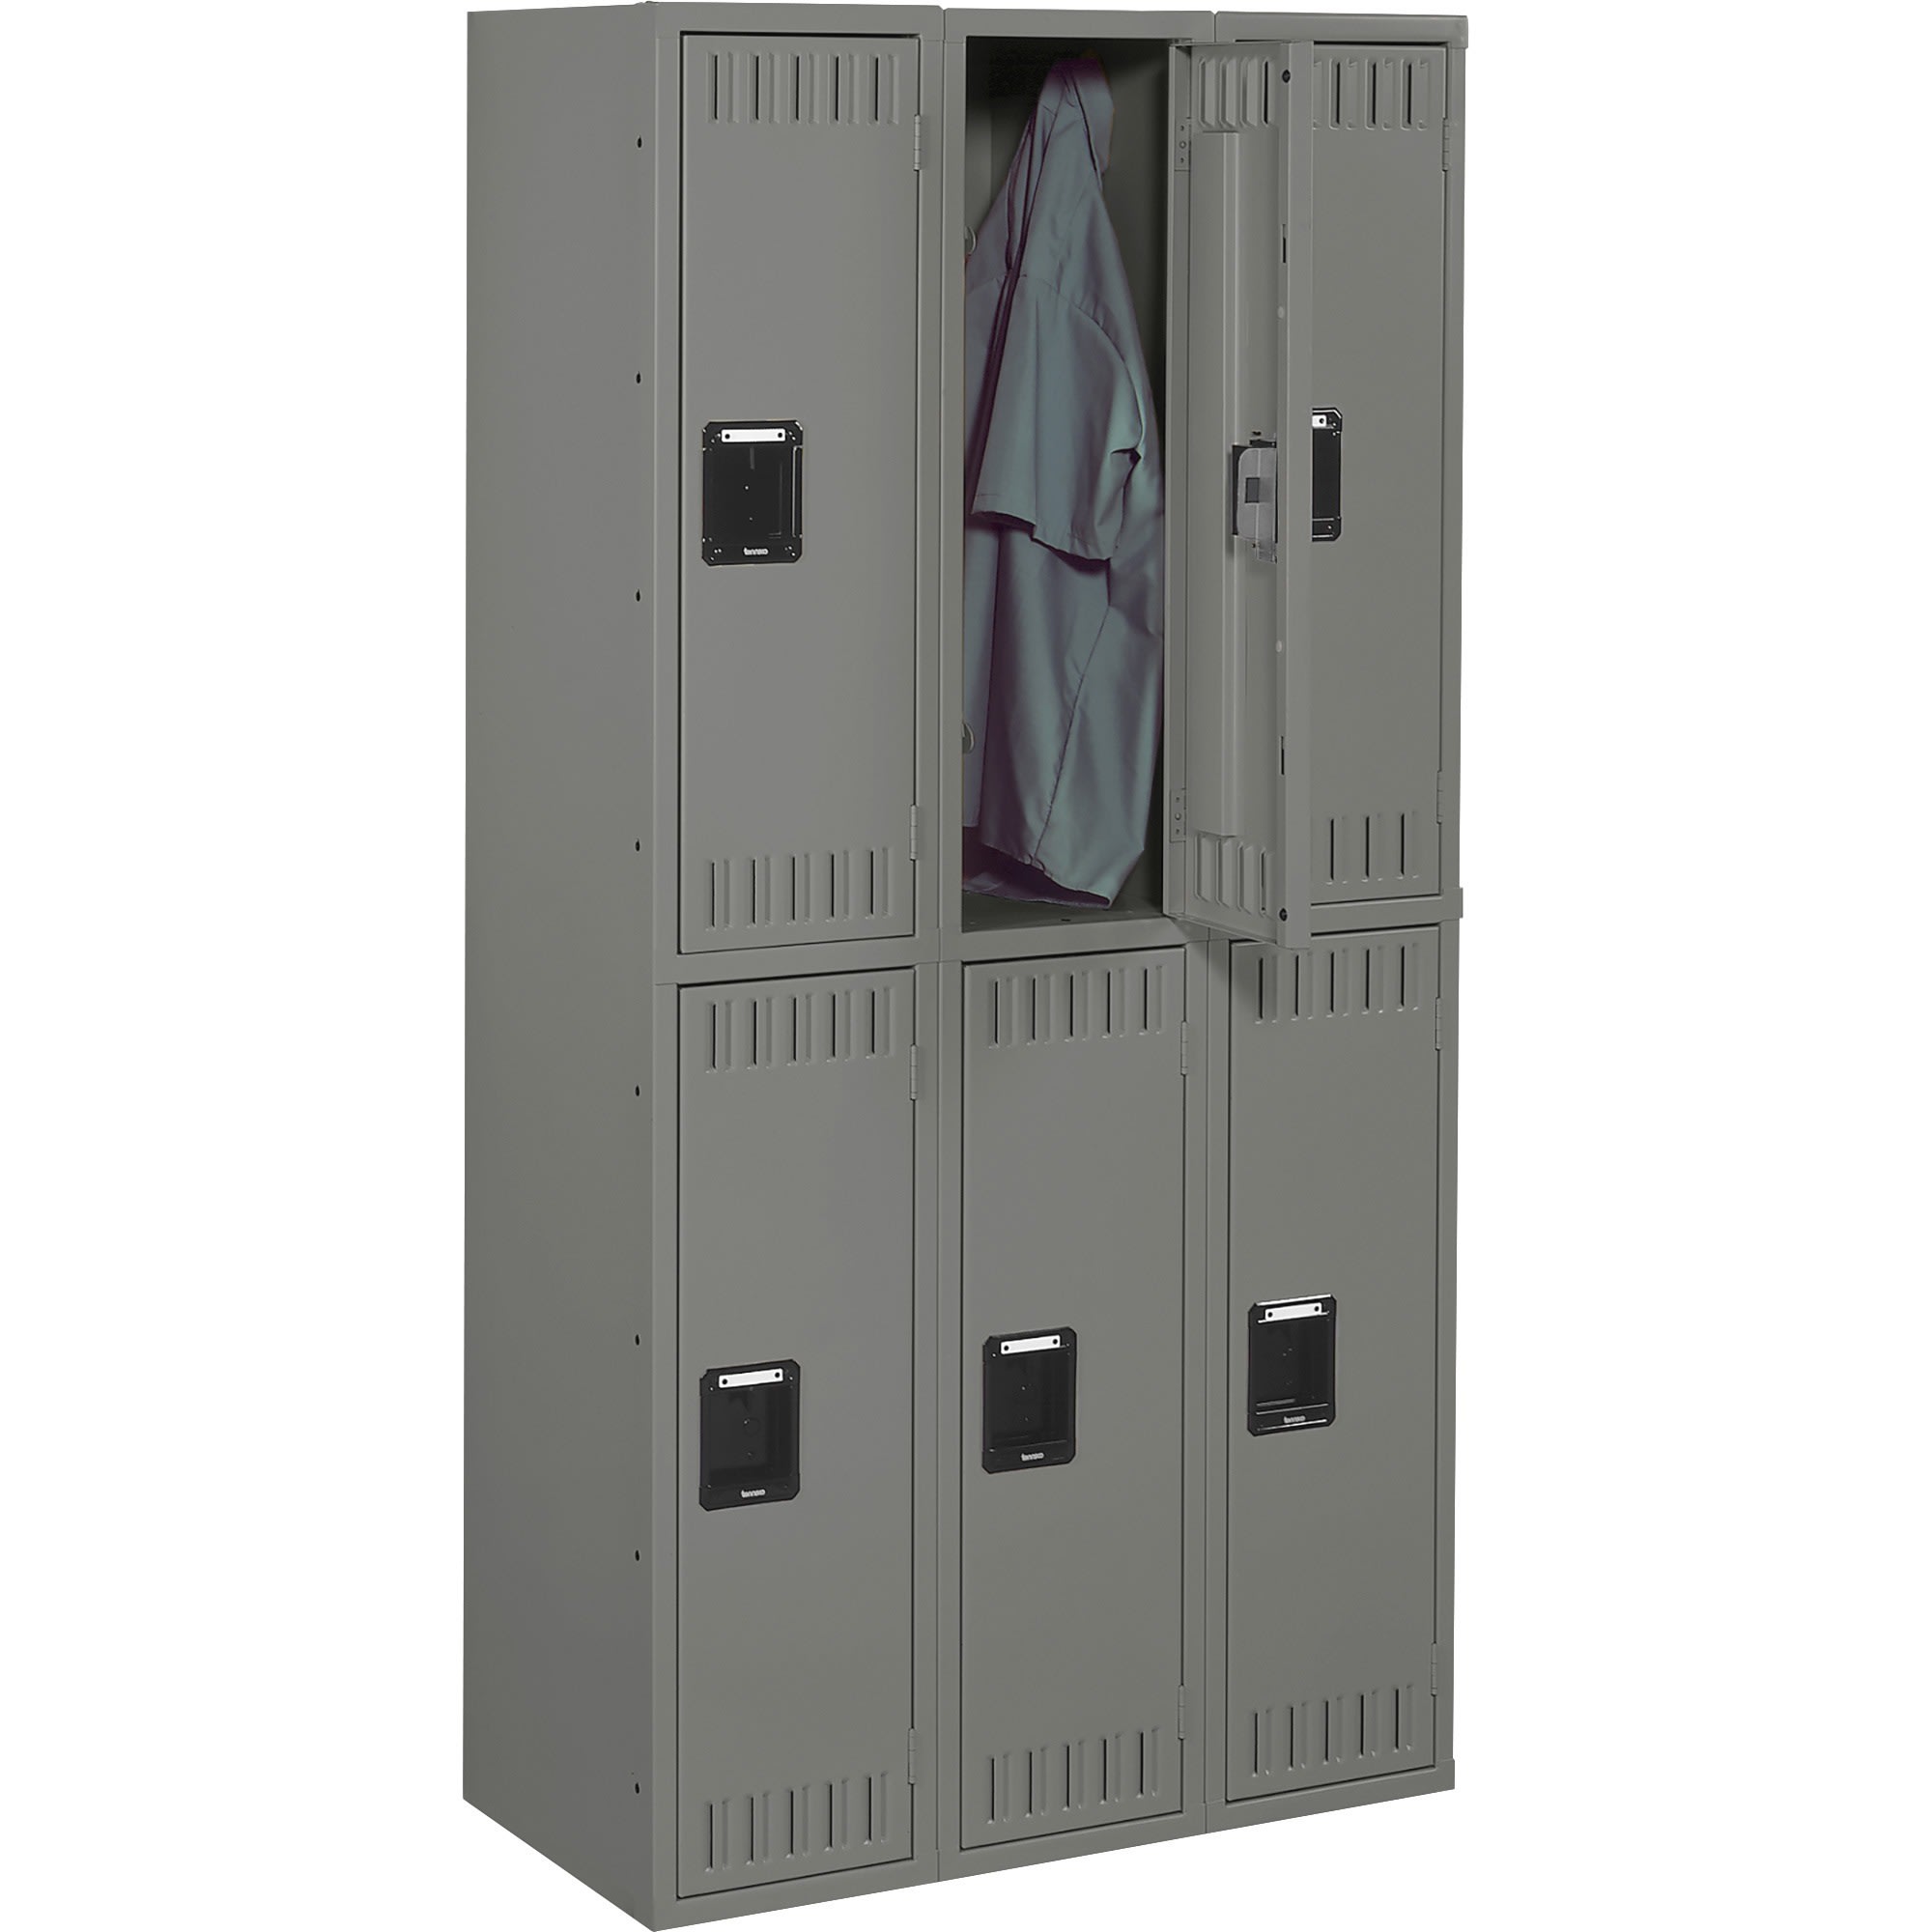 Tennsco Double Tier Locker, Triple Stack, 36"W x 18"D x 72"H - image 2 of 2